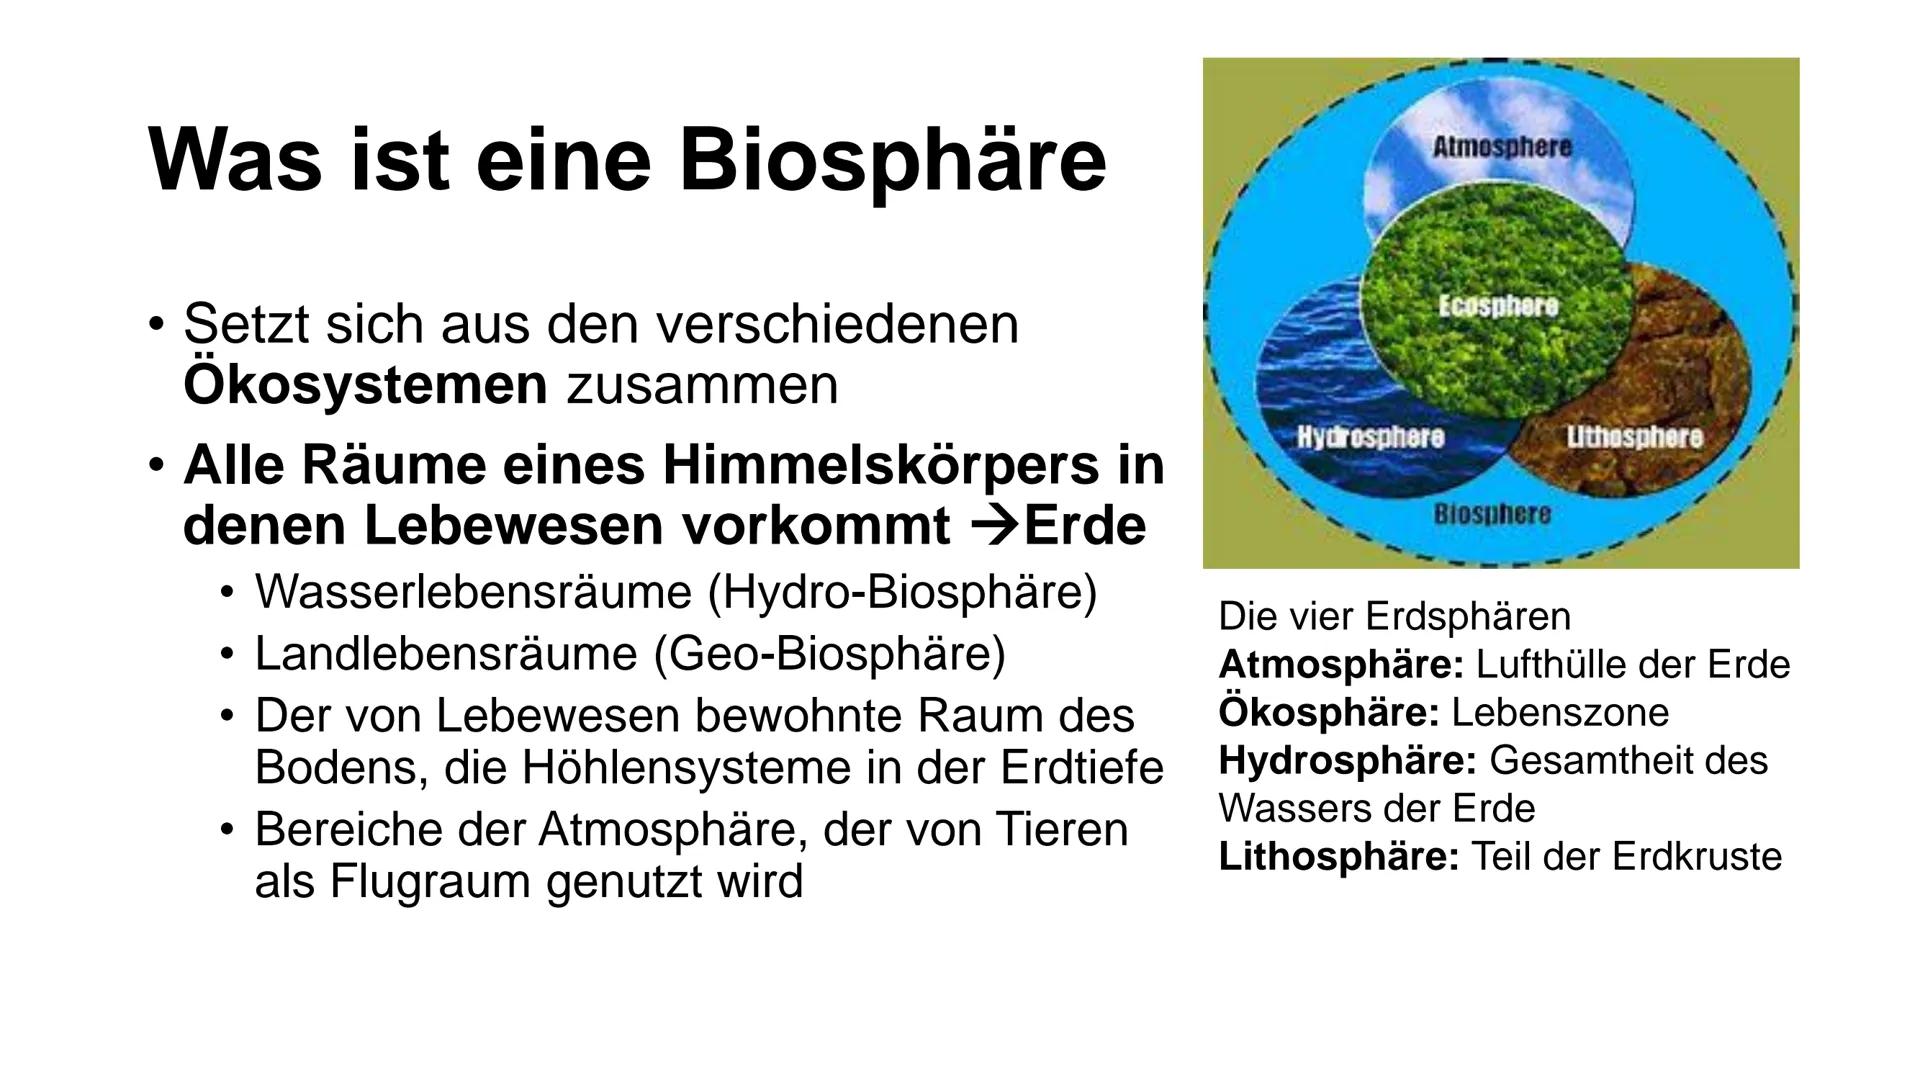 NAN
Kathrin Haug, Biologie
Biosphäre 2 Inhalt
• Was ist eine Biosphäre
• Was ist die Biosphäre 2
Aufbau
• Energiezentrum
Wasserkreislaufsyst